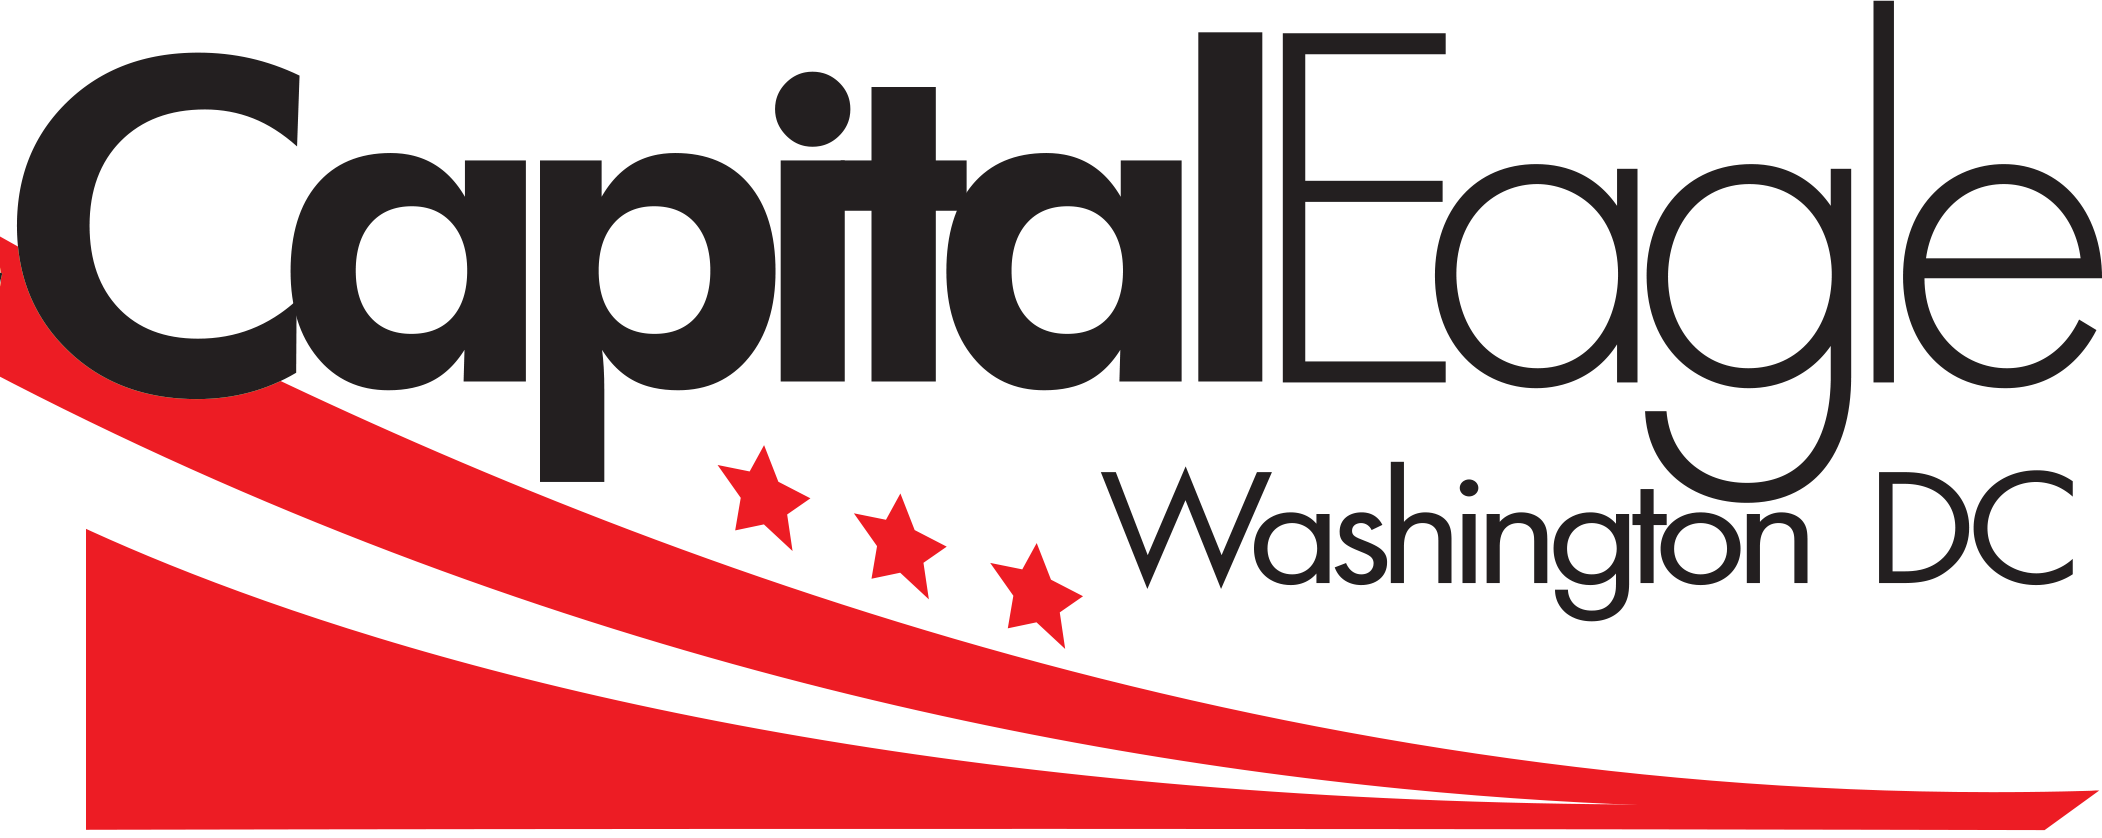 Capital Eagle Inc